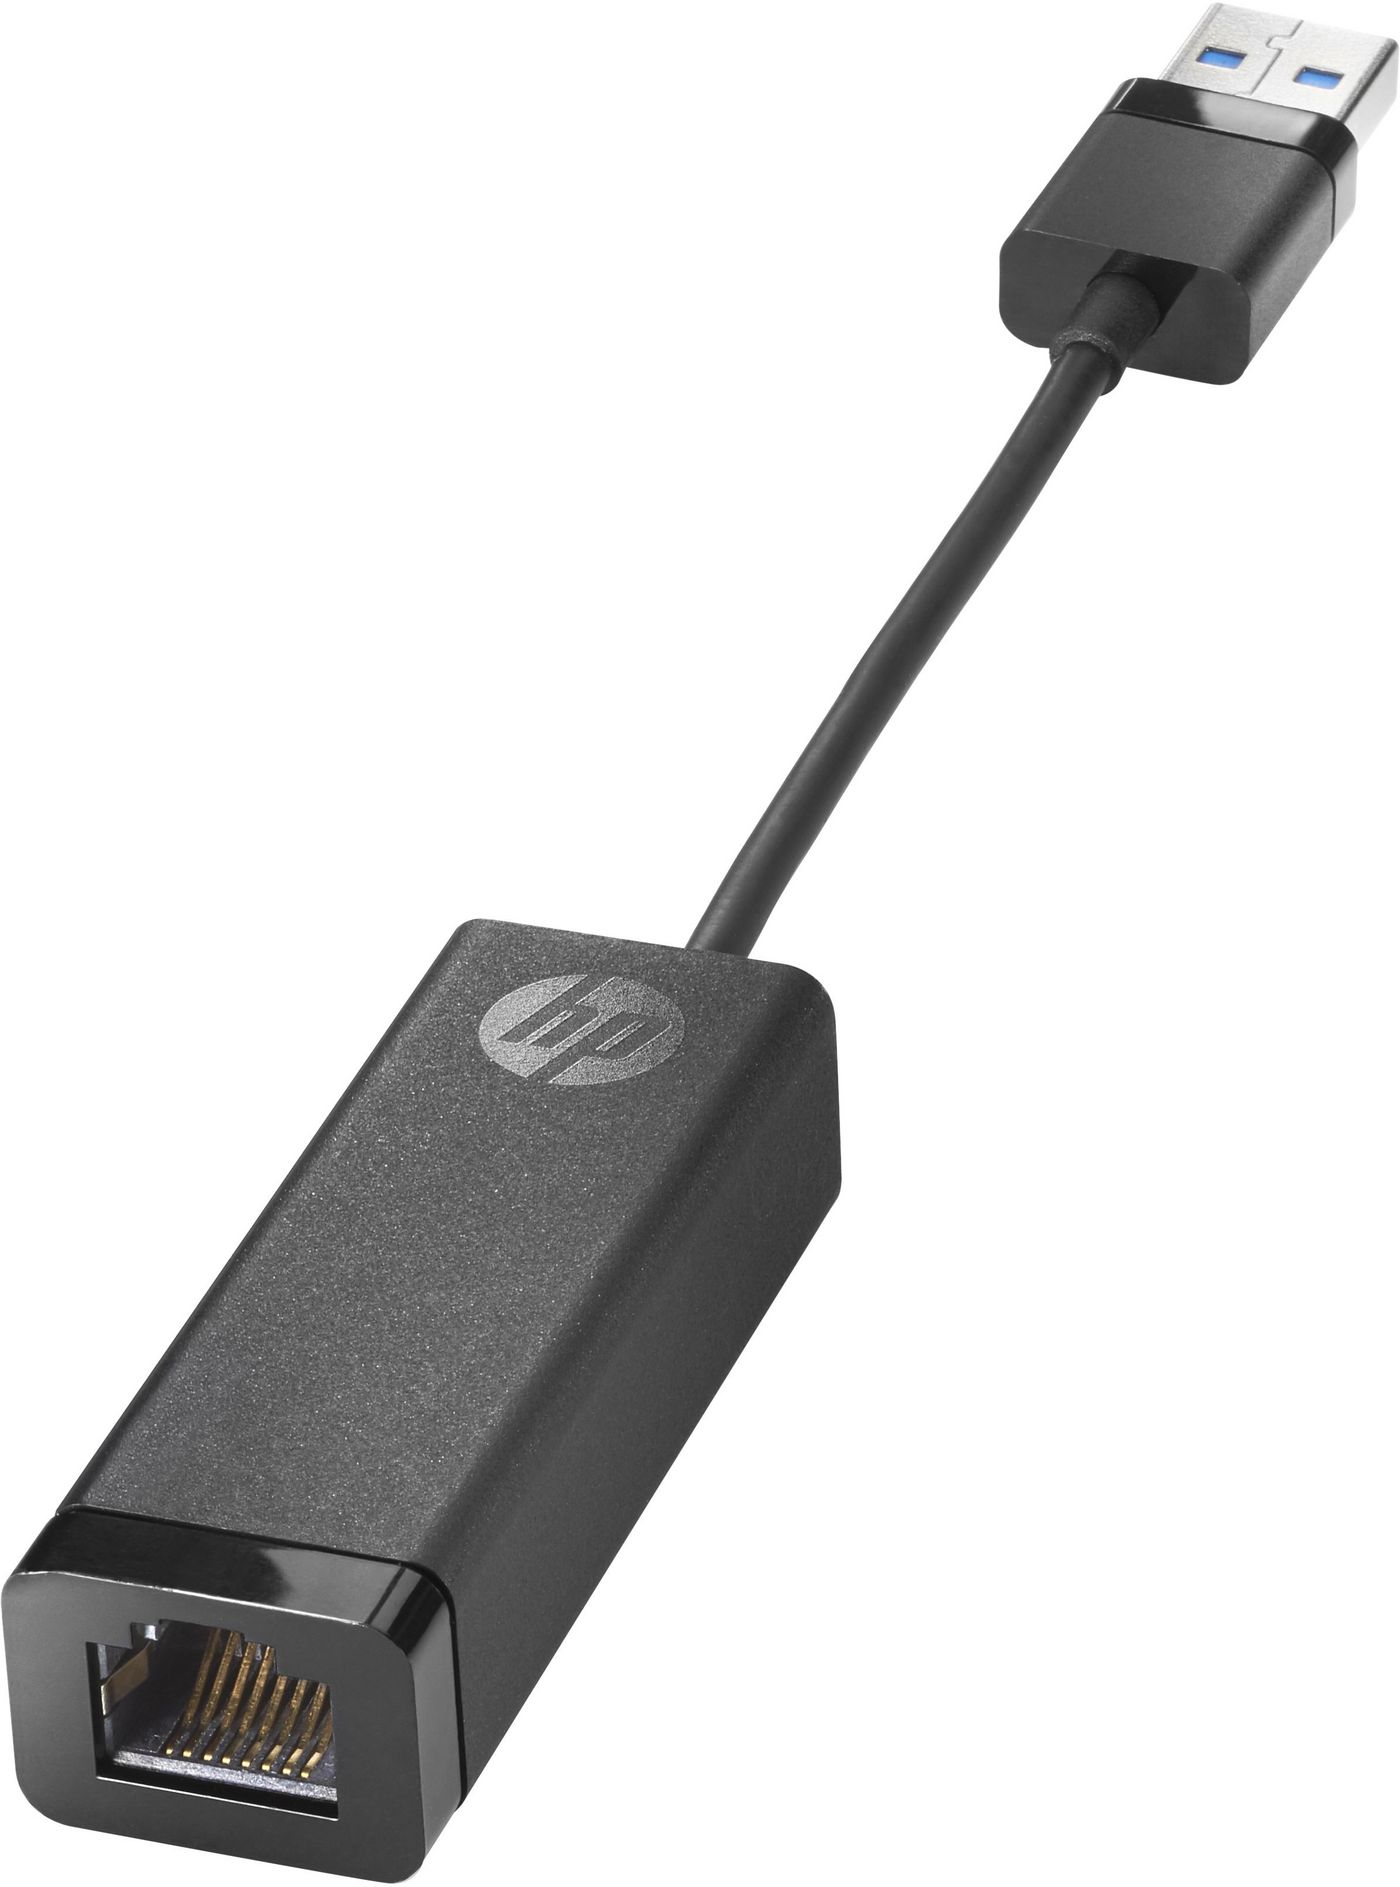 HP N7P47AA USB 3.0 to Gigabit LAN Adapter 